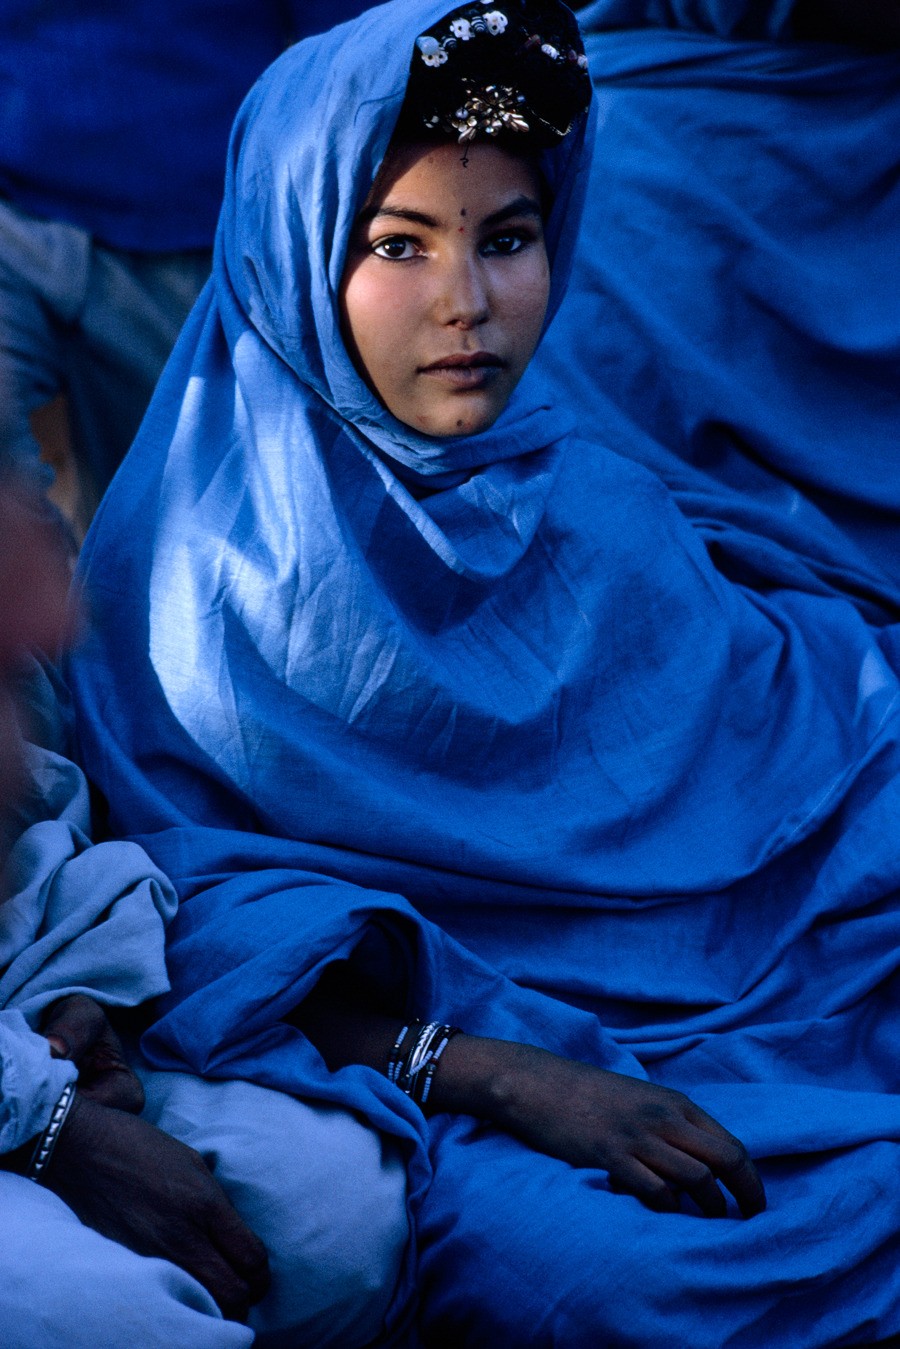 Женщина из кочевого племени в Алжире, 1967. Фотограф Джонатан Блэр